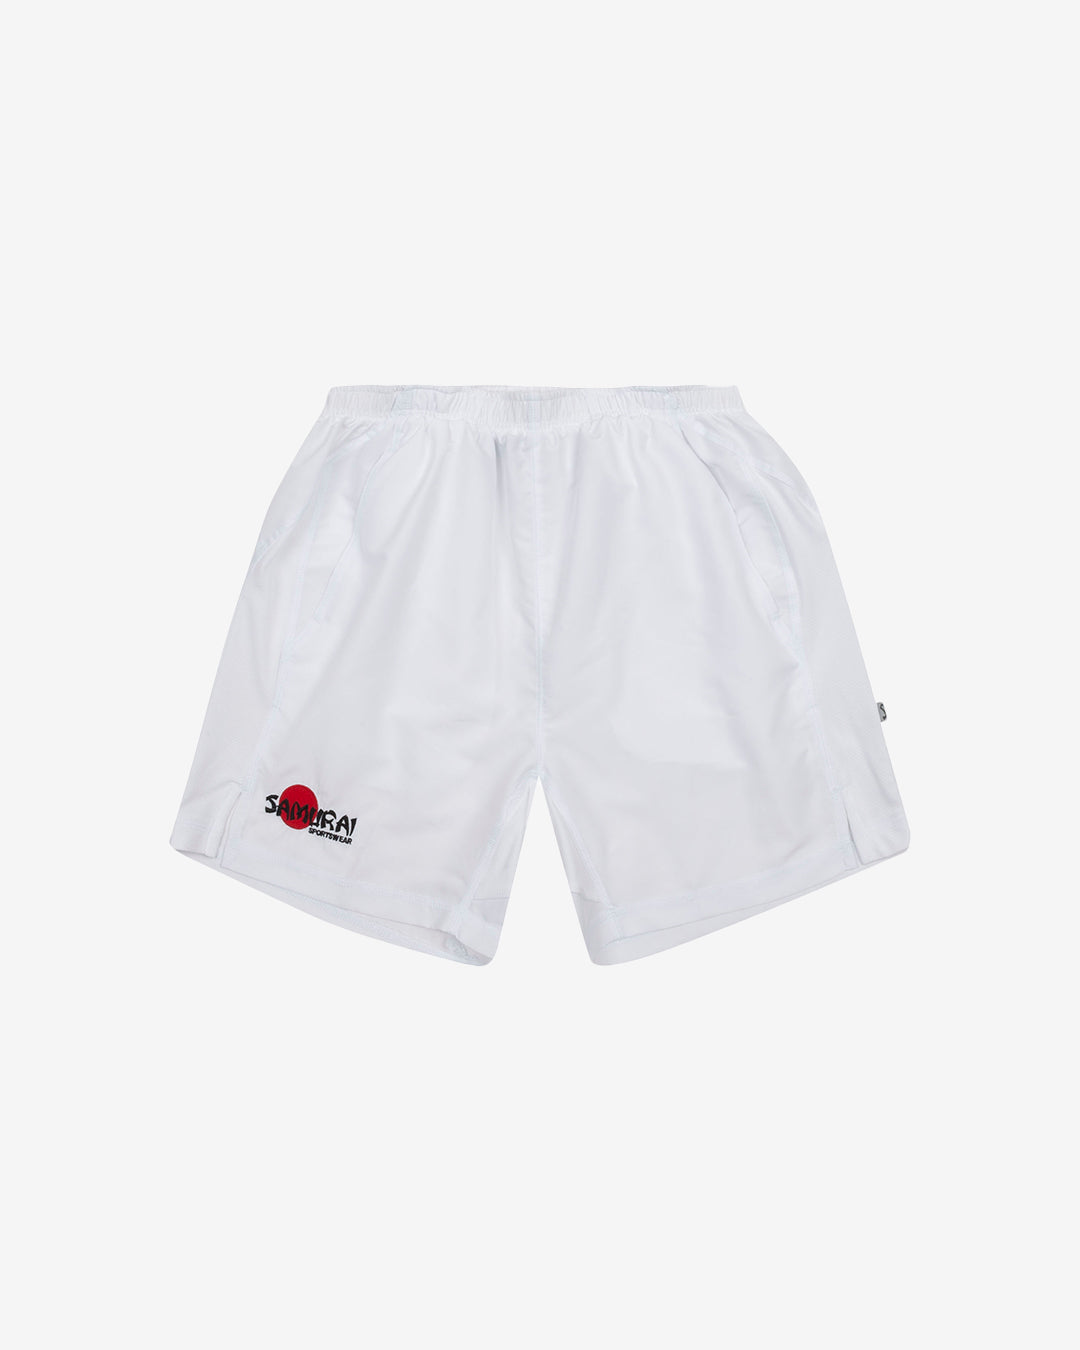 Hc: 9606 - Junior Clipper Shorts - White